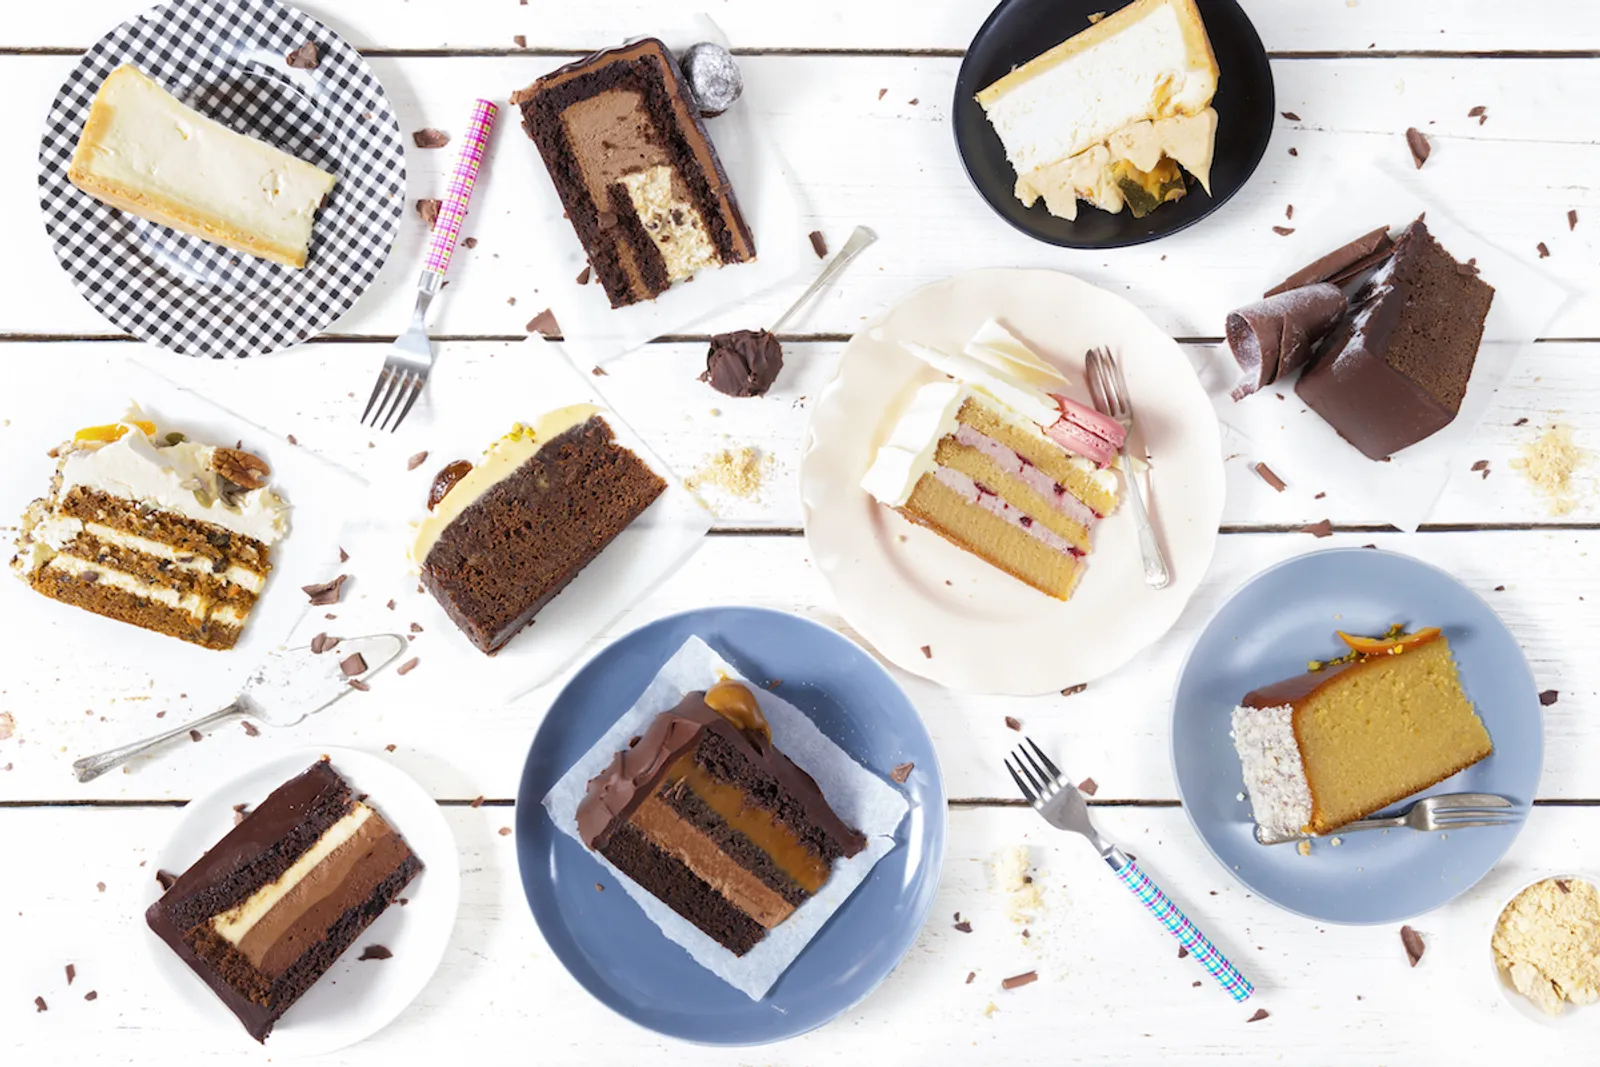 Makan Kue Di Pagi Hari Bisa Turunkan Berat Badan? Masa Sih?